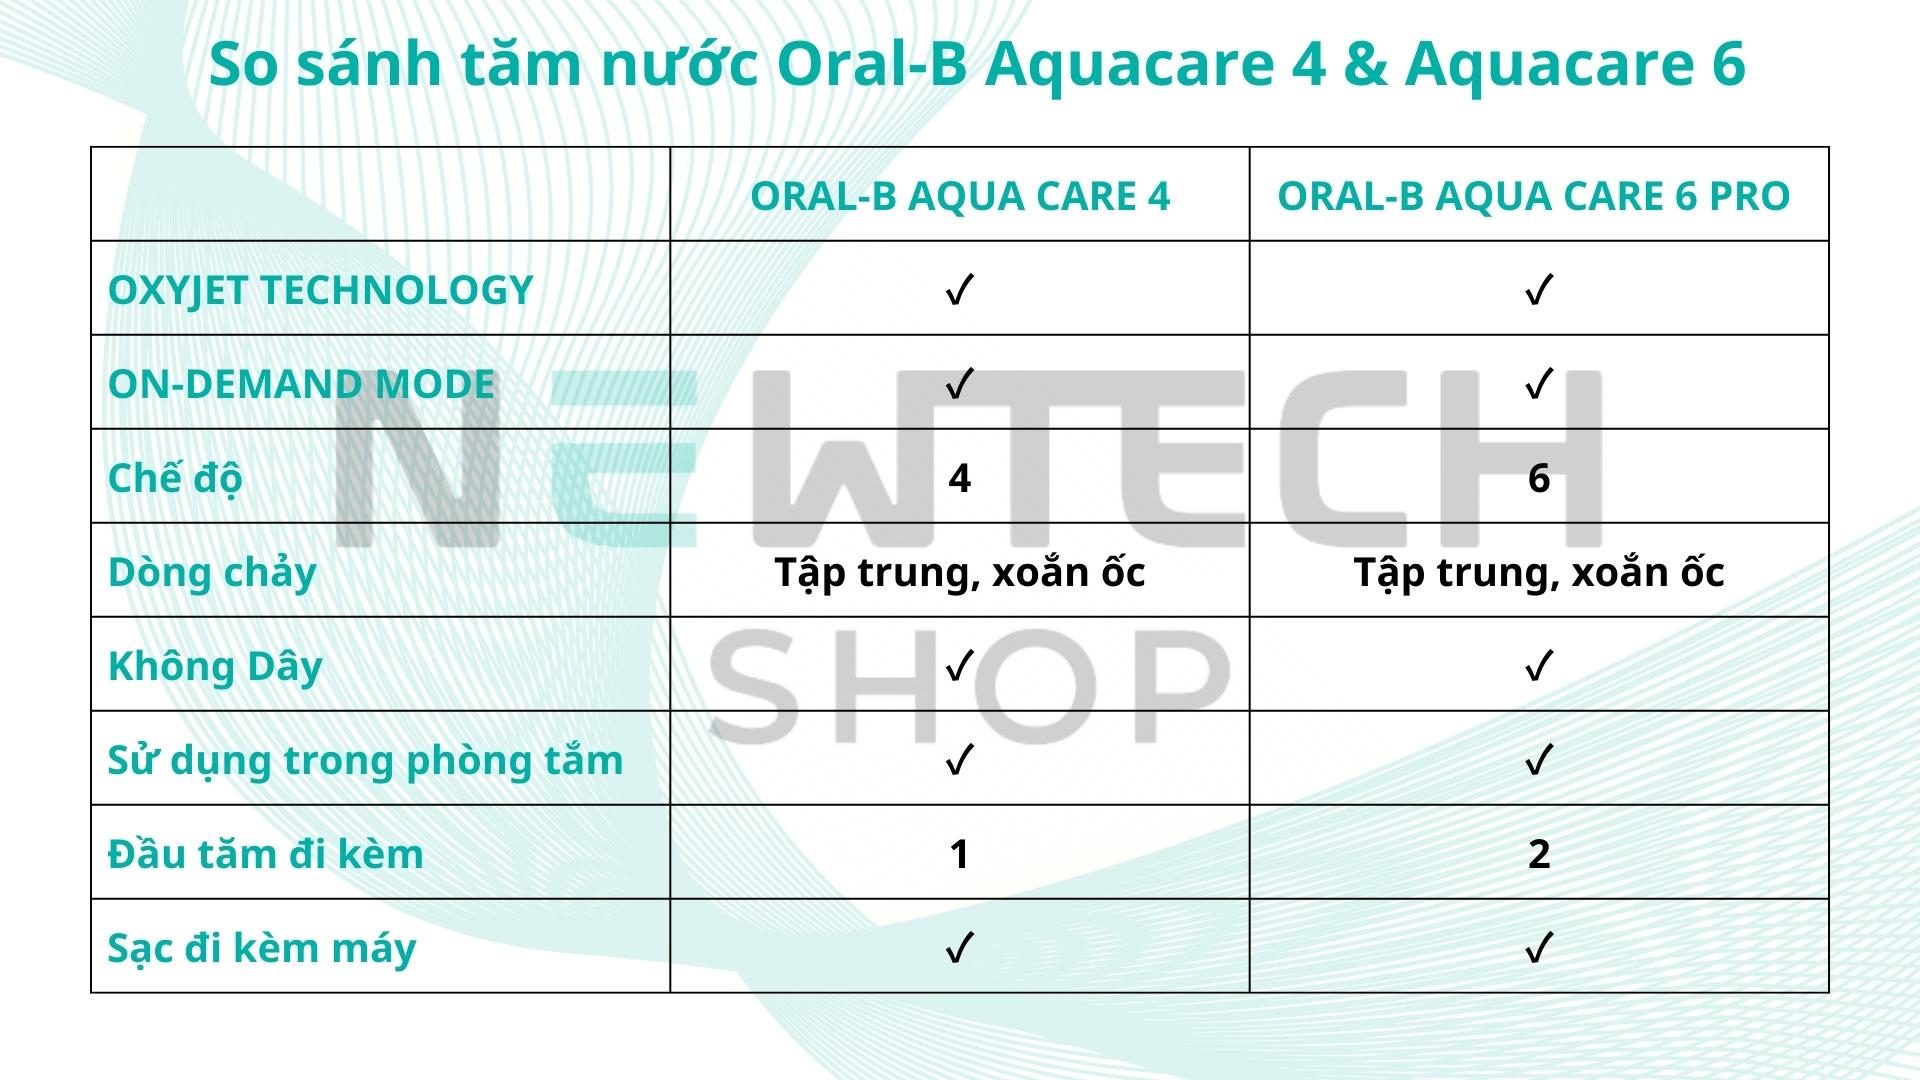 Tăm nước Oral-B Aquacare 4